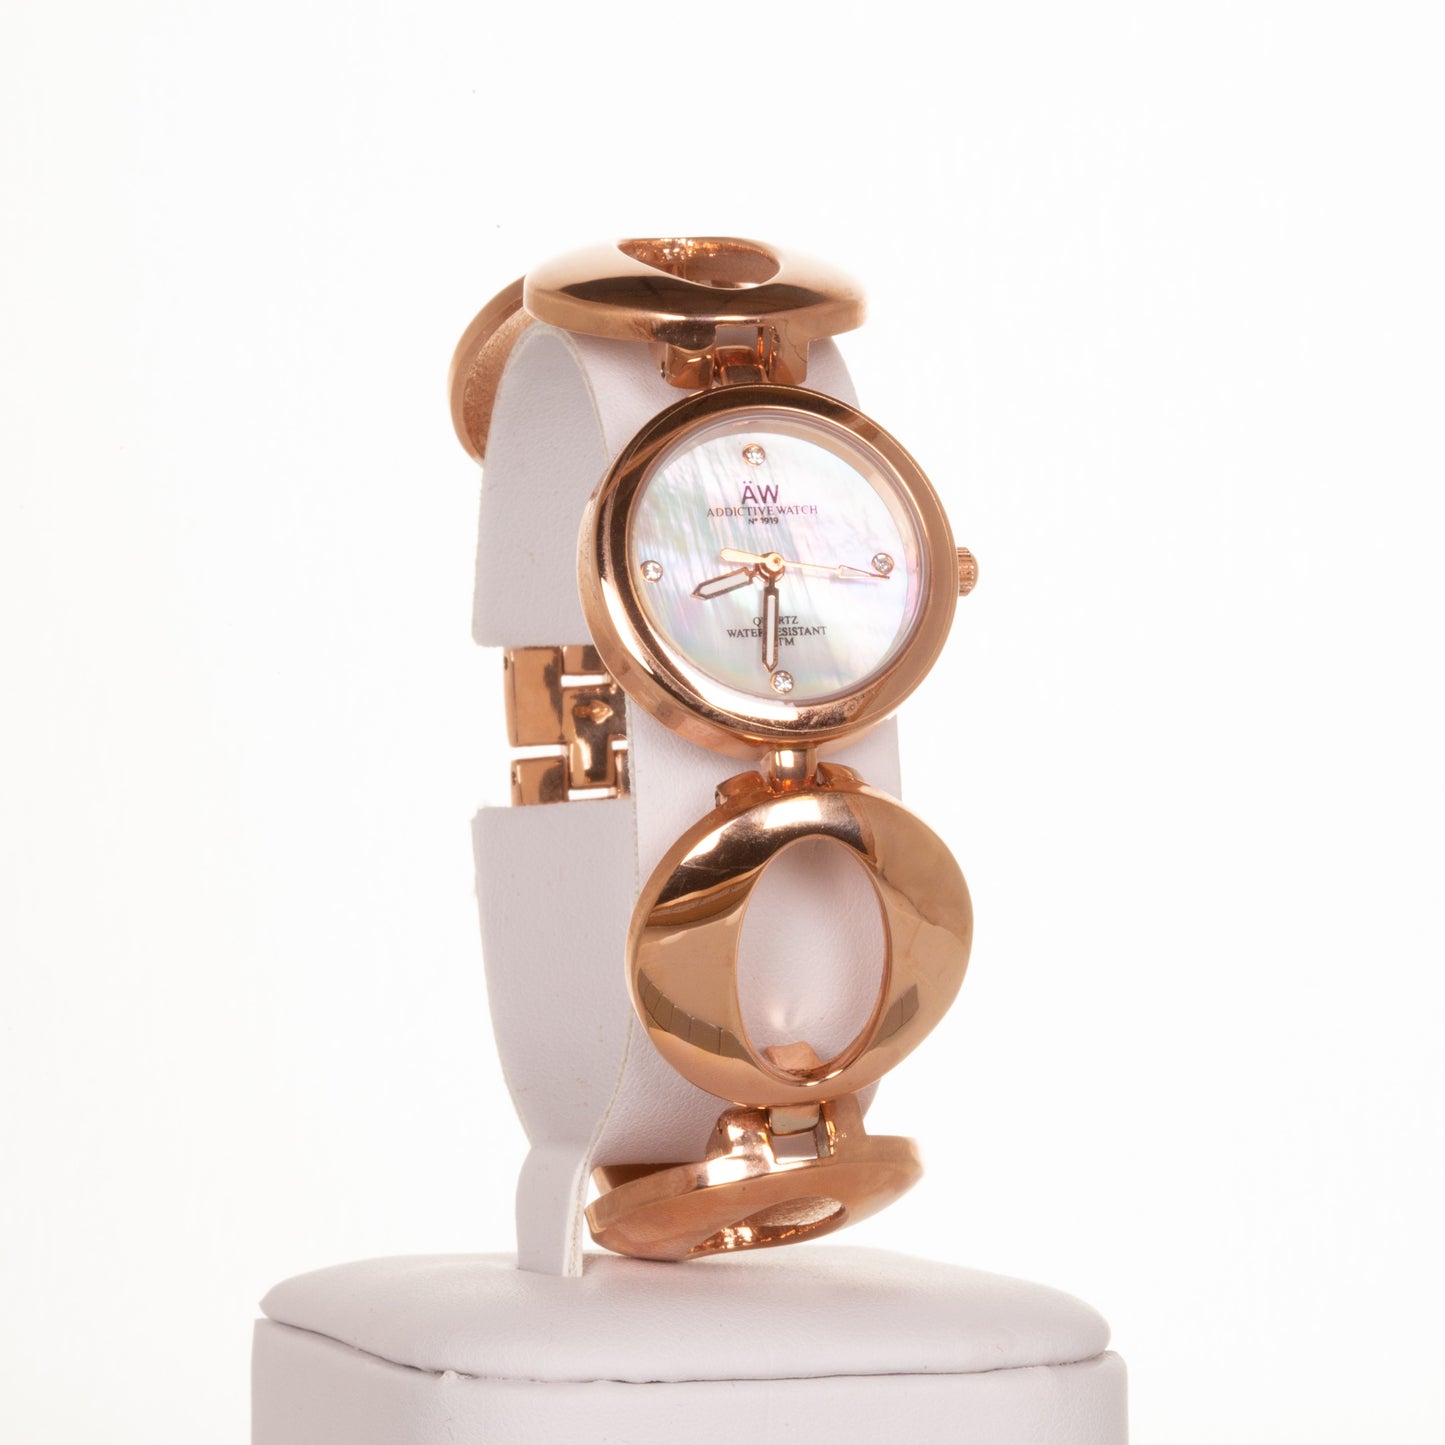 AW dámské hodinky v barvě růžového zlata s řemínkem se symbolem nekonečna a 4 krystaly křemenu | -80% Akce na Šperky